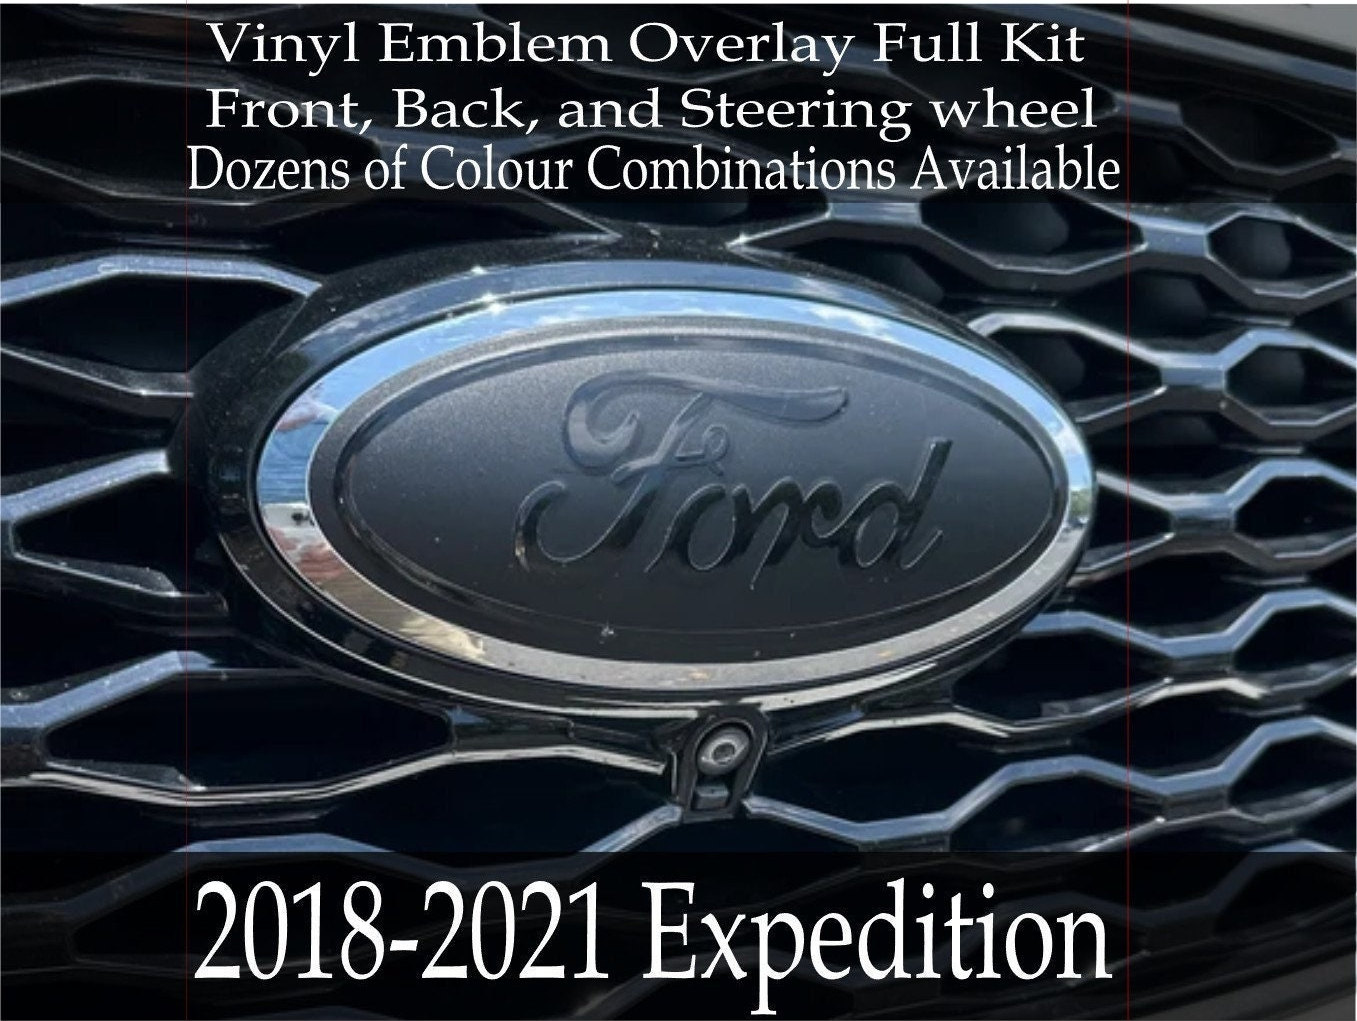 Precut Window Tint Kit - First 2017-2021 Ford F-250 All Trims